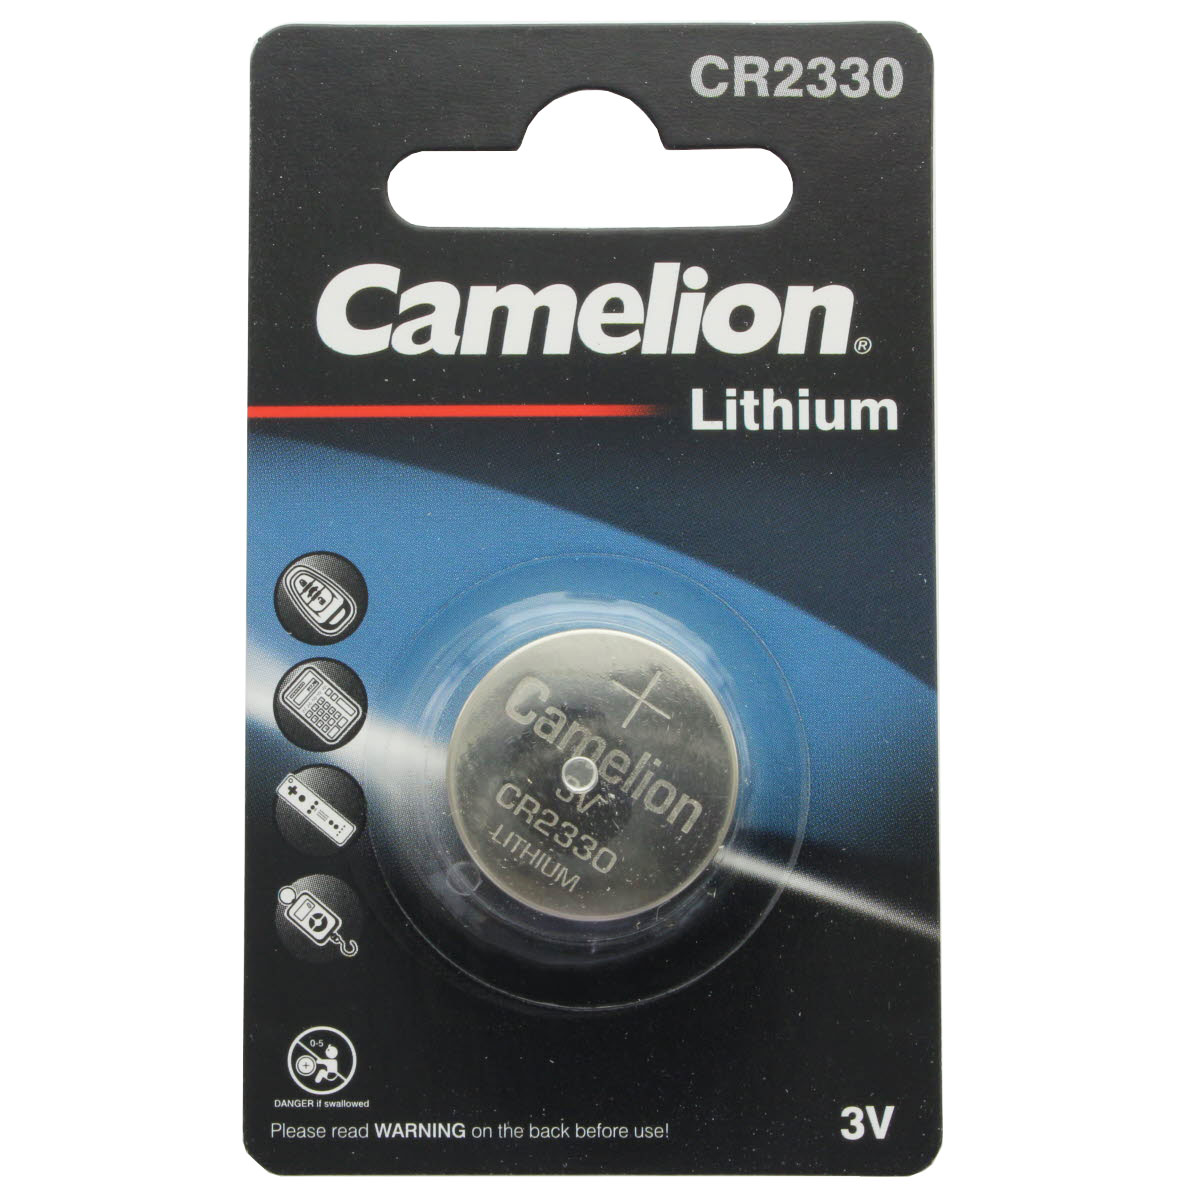 Camelion CR2330 Lithium Batterie 625mAh, Abmessungen 23x3mm